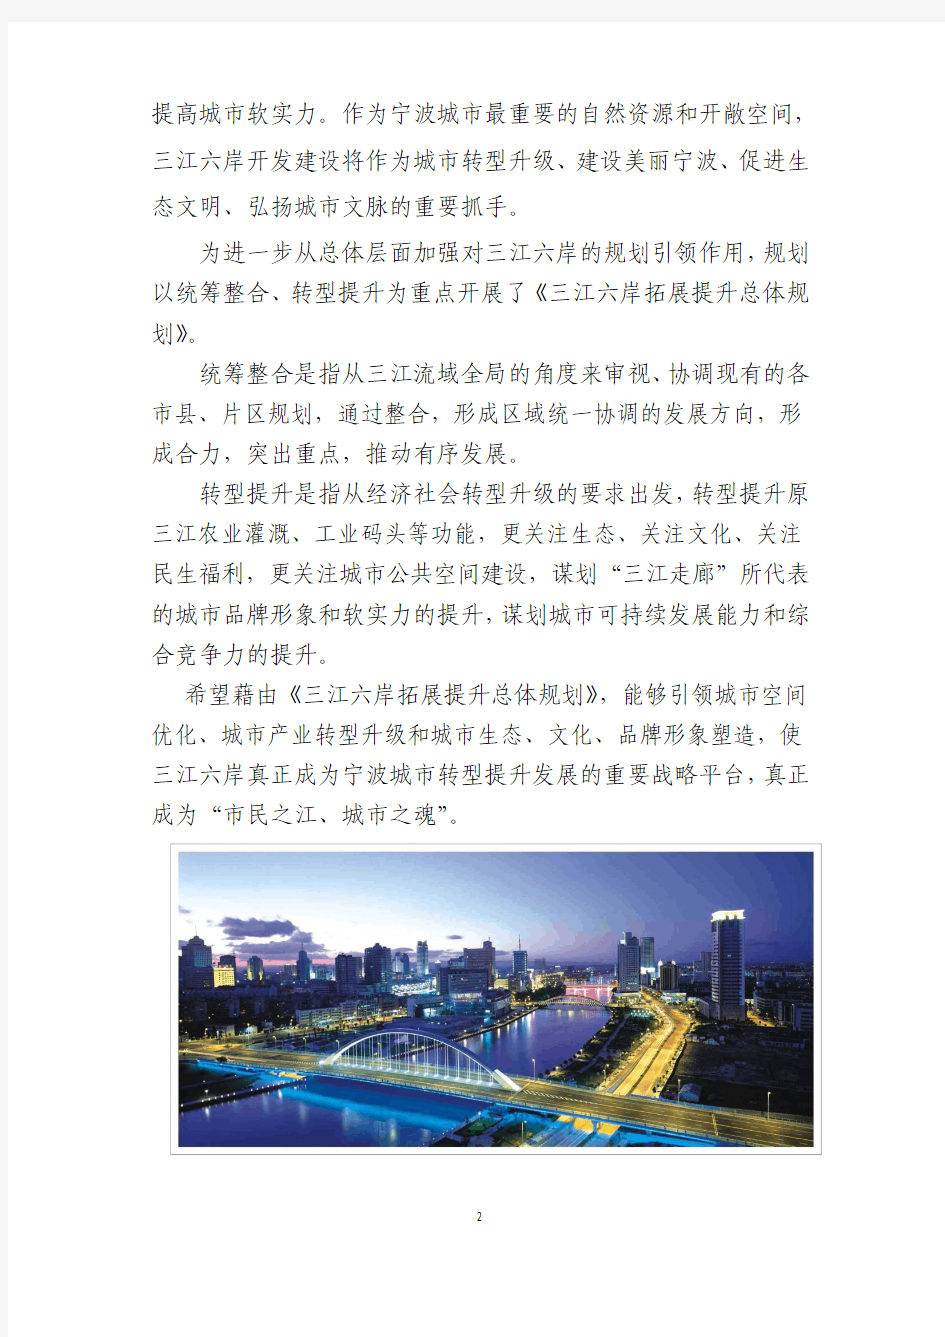 宁波三江六岸拓展提升总体规划公示材料